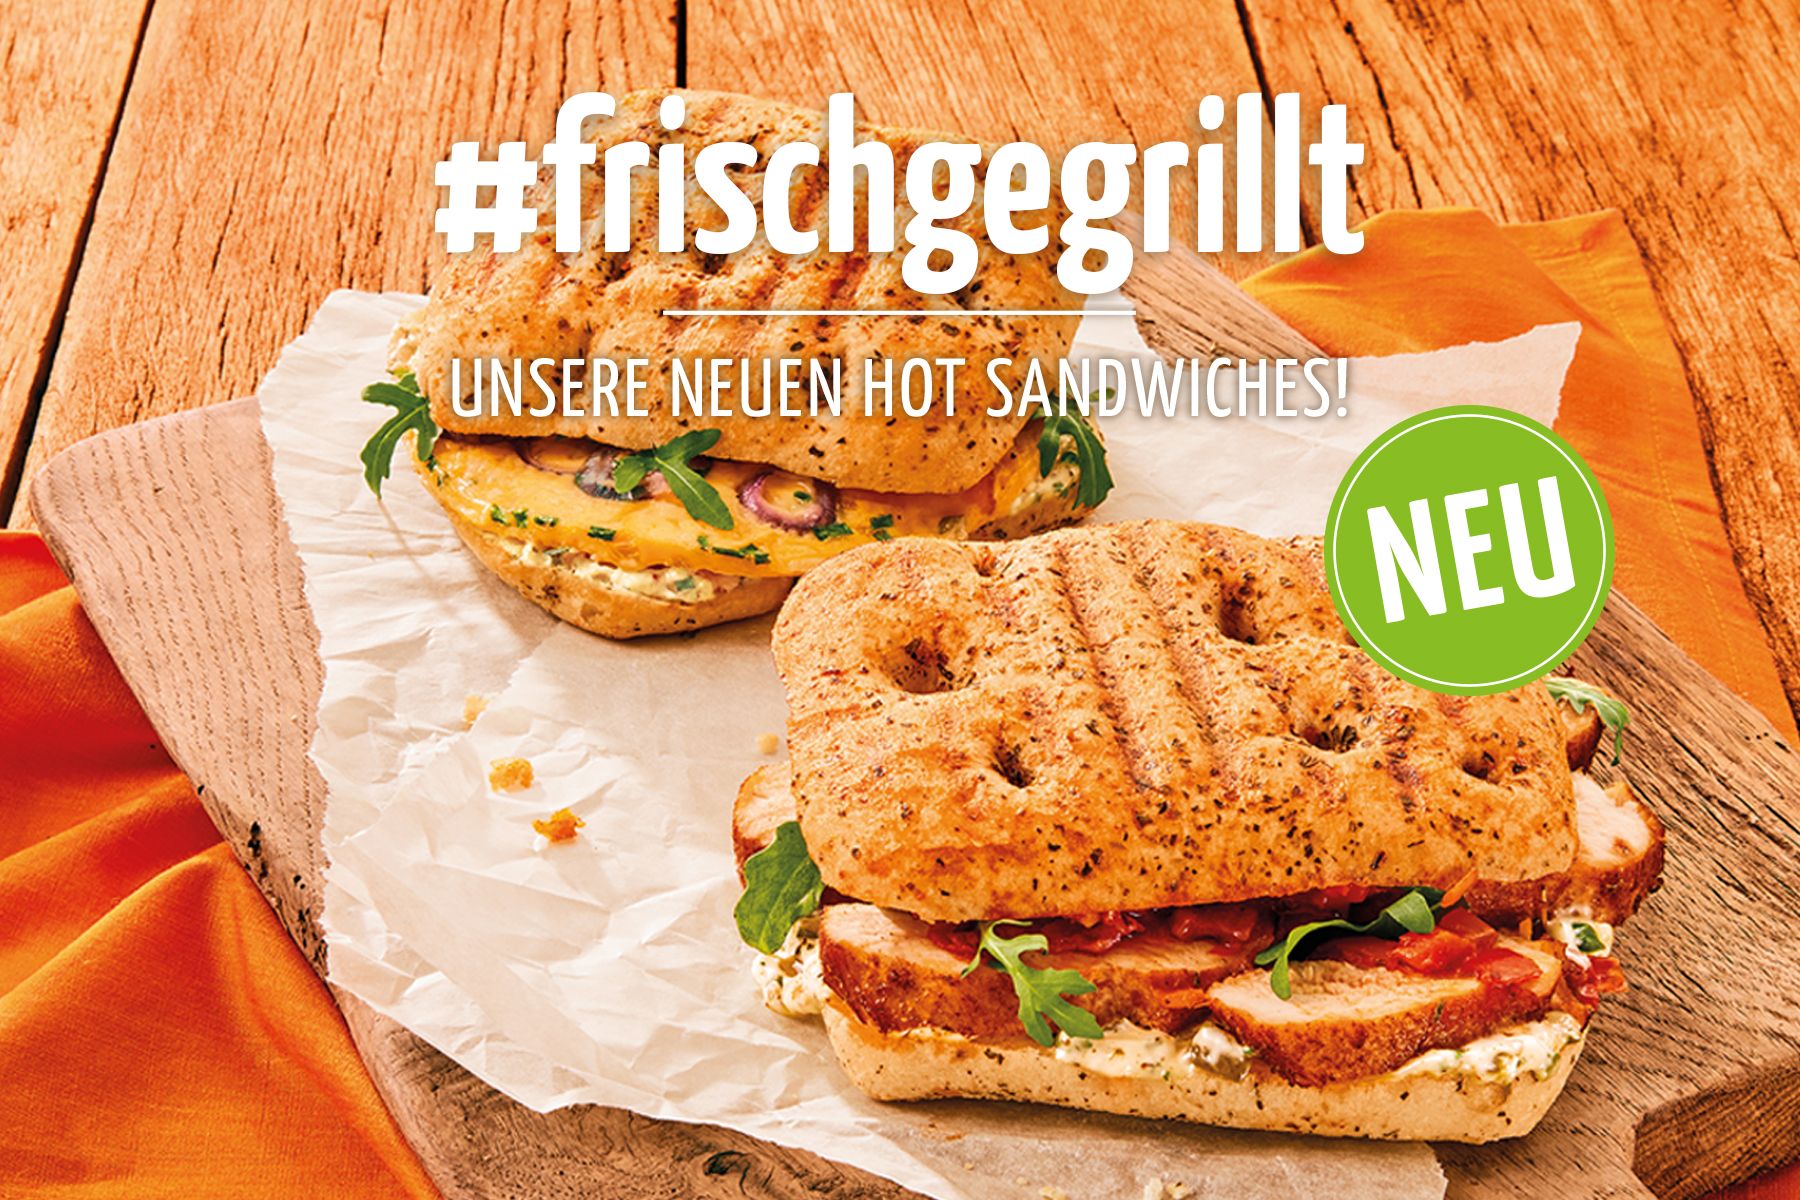 #frischgegrillt – unsere neuen Hot Sandwiches!